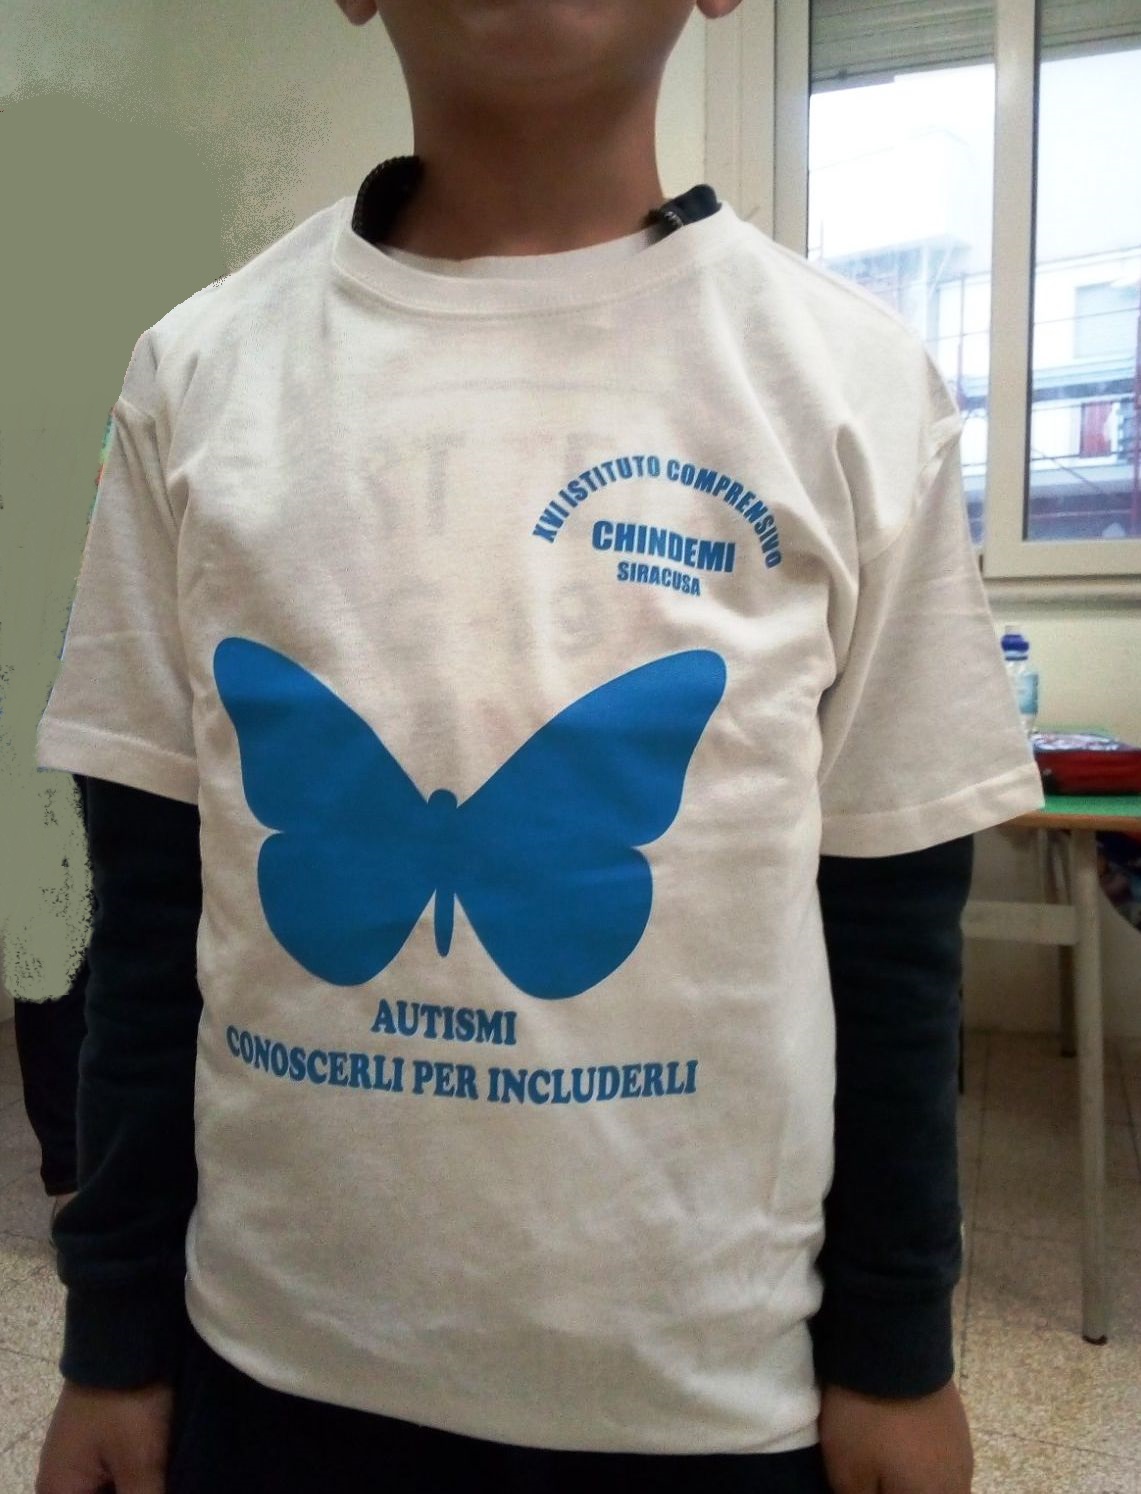 Giornata mondiale dell’Autismo: in Ortigia marcia degli alunni della “Chindemi” verso la casa delle farfalle